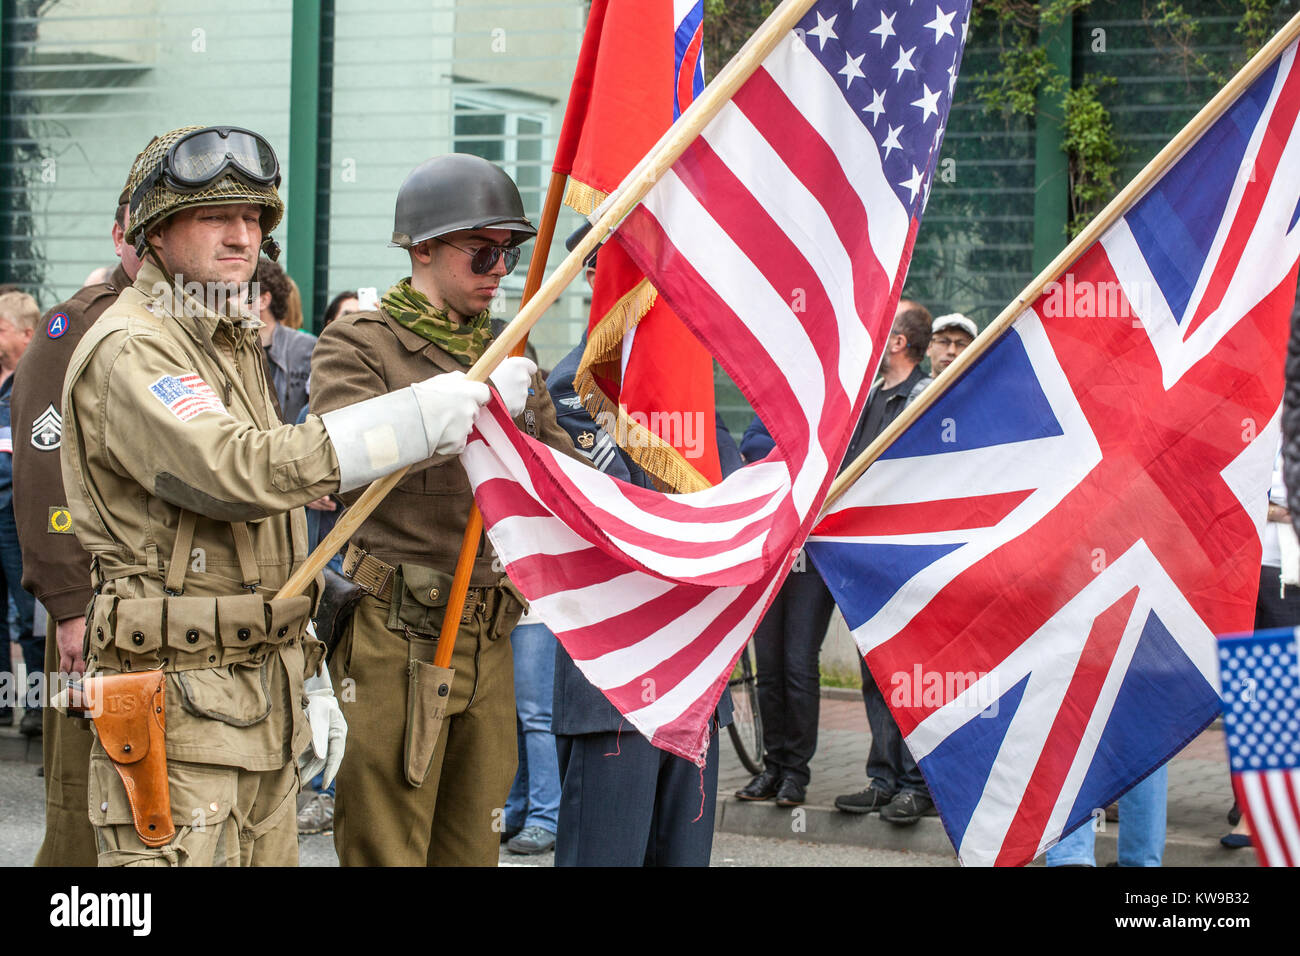 Célébrations de la ville libérée, ville tchèque de Plzen, soldats américains de la Seconde Guerre mondiale de la République tchèque de Pilsen Banque D'Images